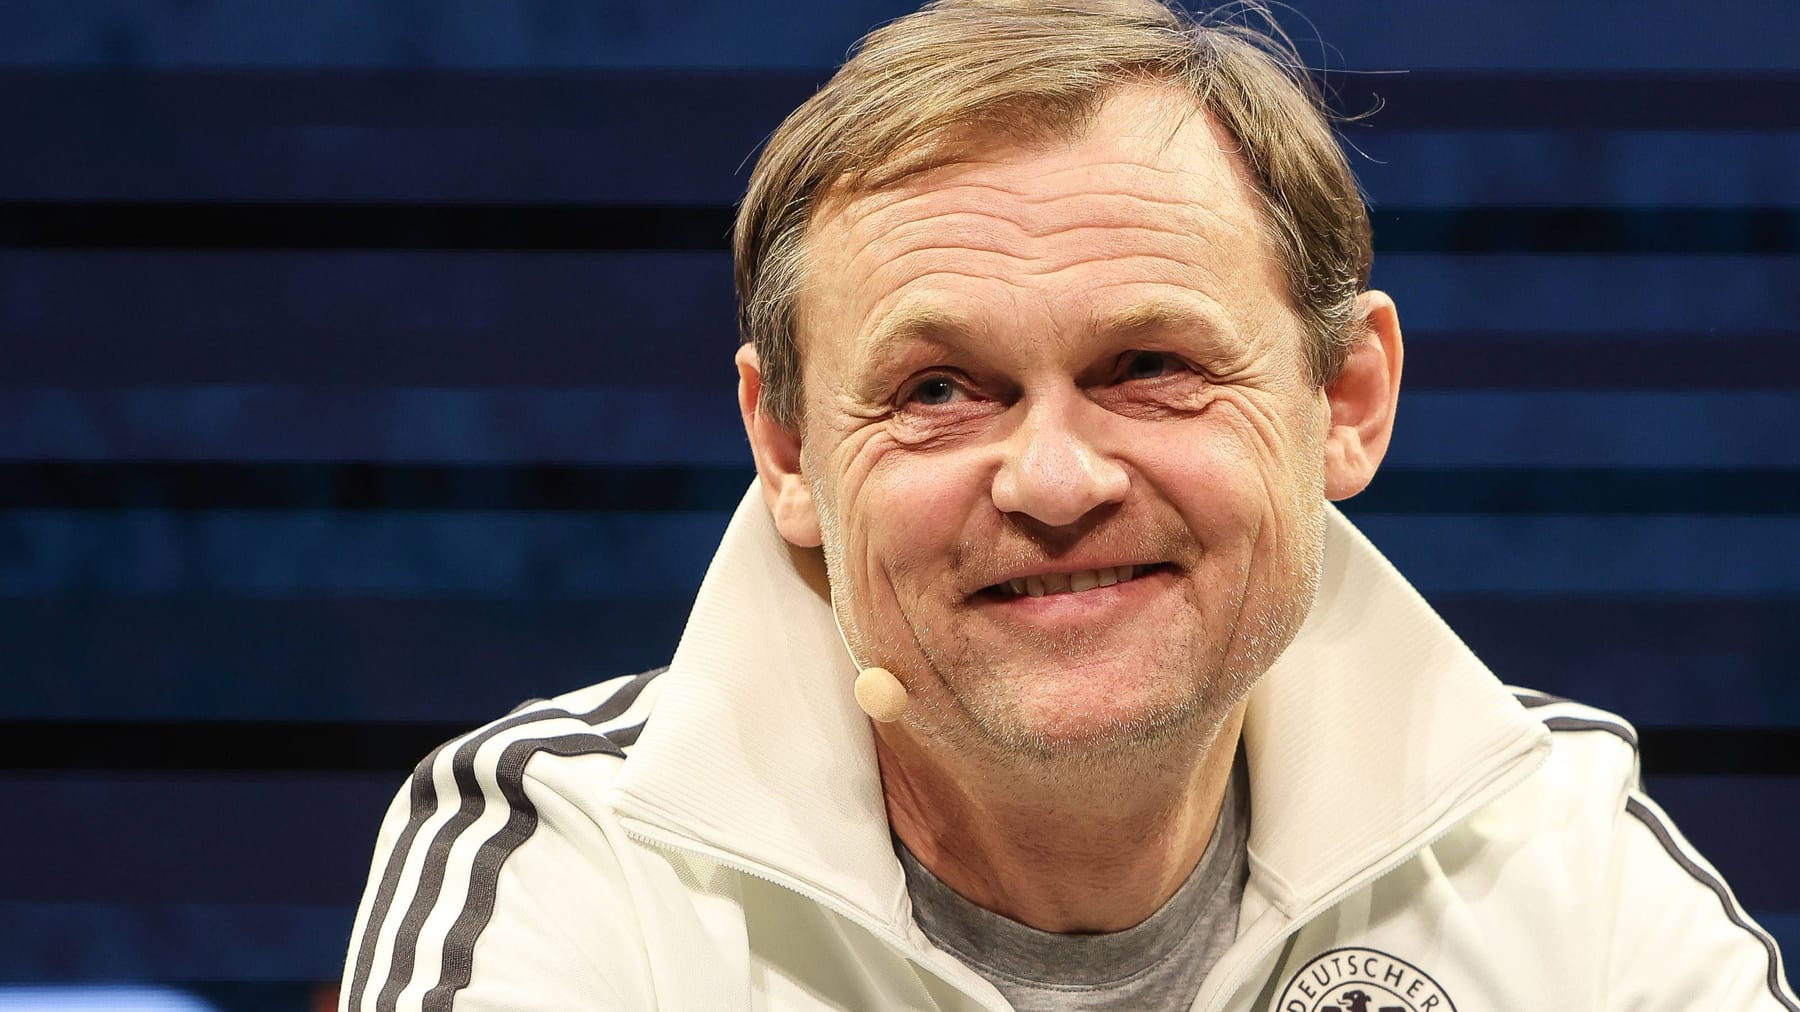 Adidas-Chef Gulden hält Trennung vom DFB für "vernünftige Entscheidung"